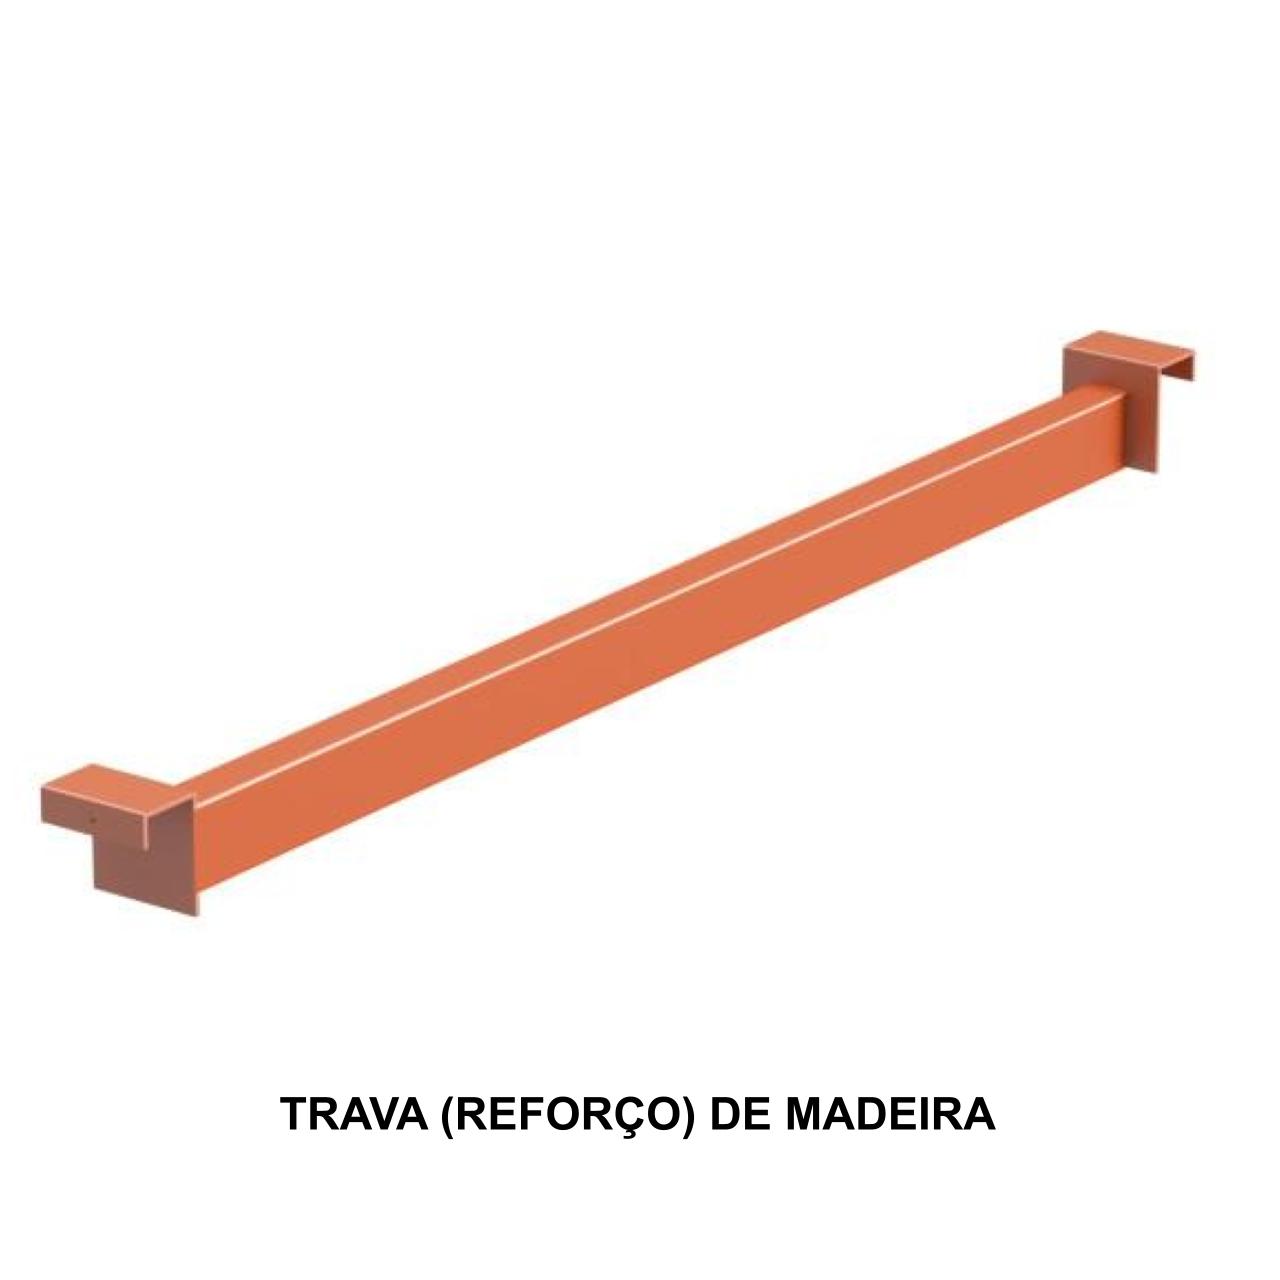 TRANSVERSINA – REFORCO P/ PLANO DE MADEIRA 720X36MM – LRJ – 11086 AMANHECER MÓVEIS